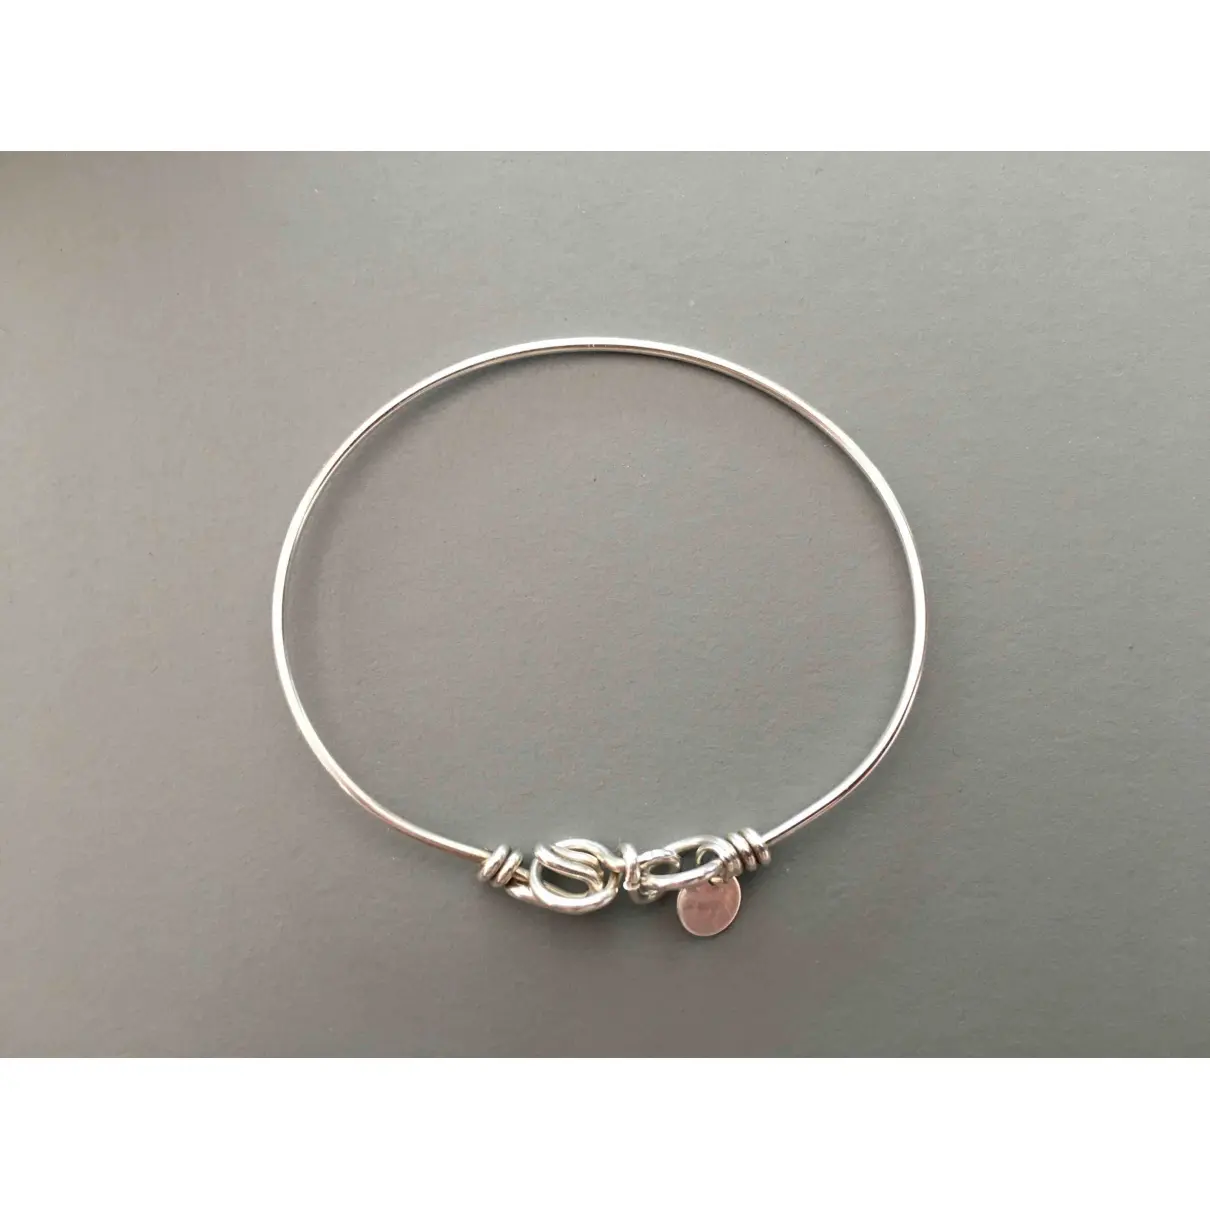 Buy Atelier Paulin Silver bracelet online